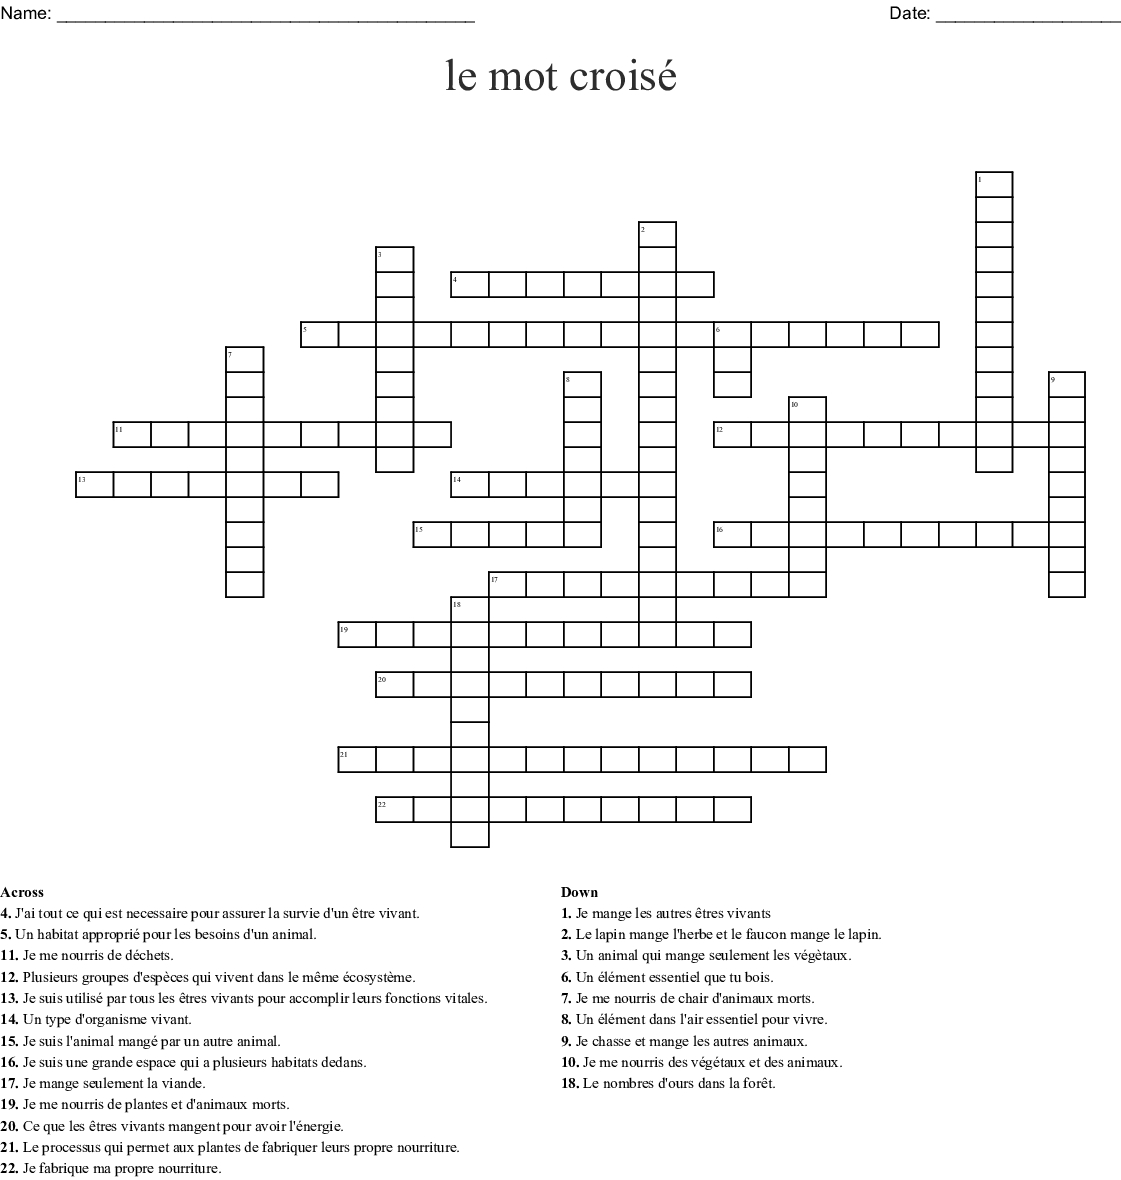 Le Mot Croisé Crossword - Wordmint encequiconcerne Un Mot Croisé 